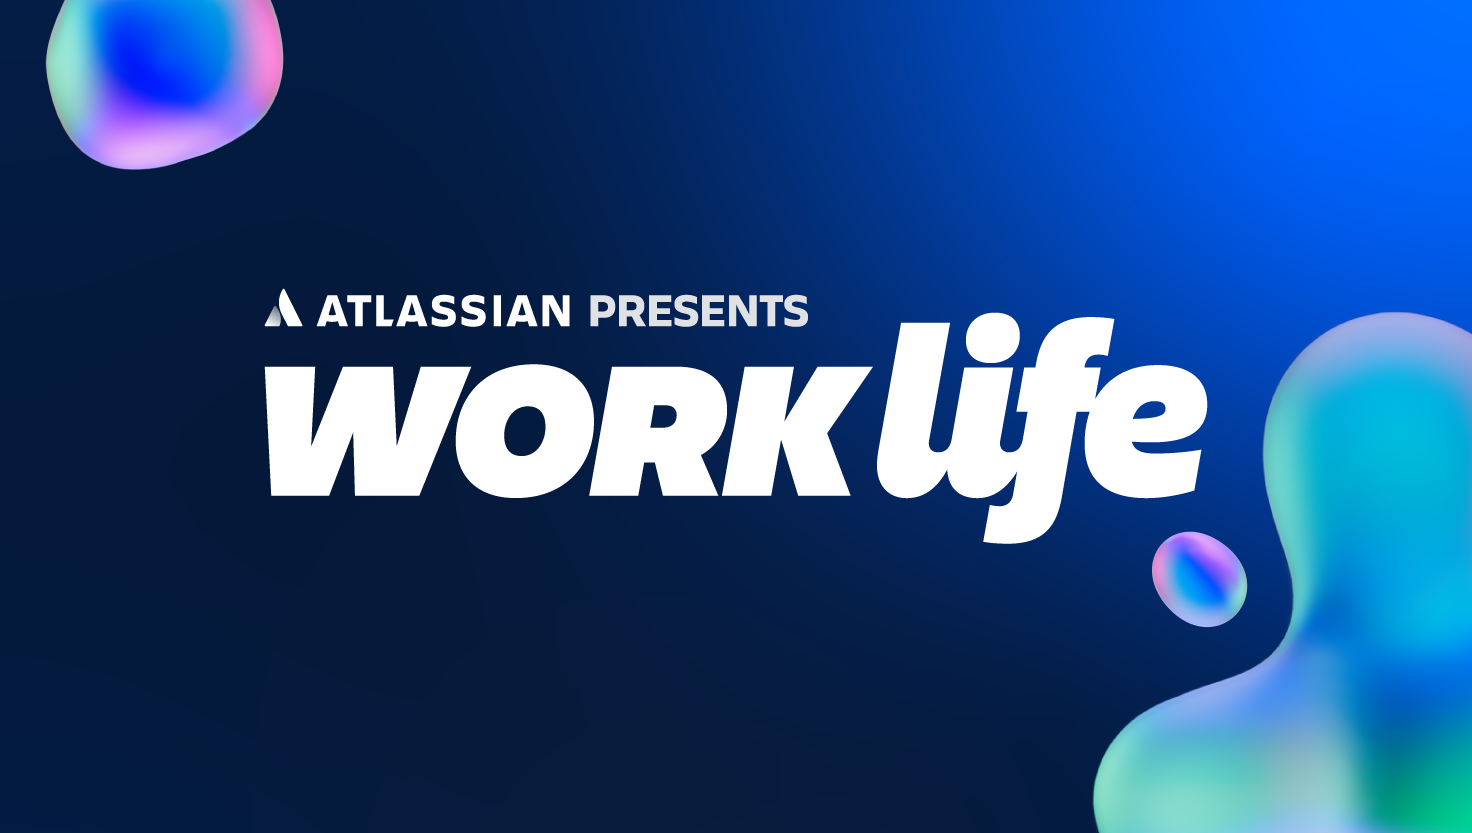 Work Life logo